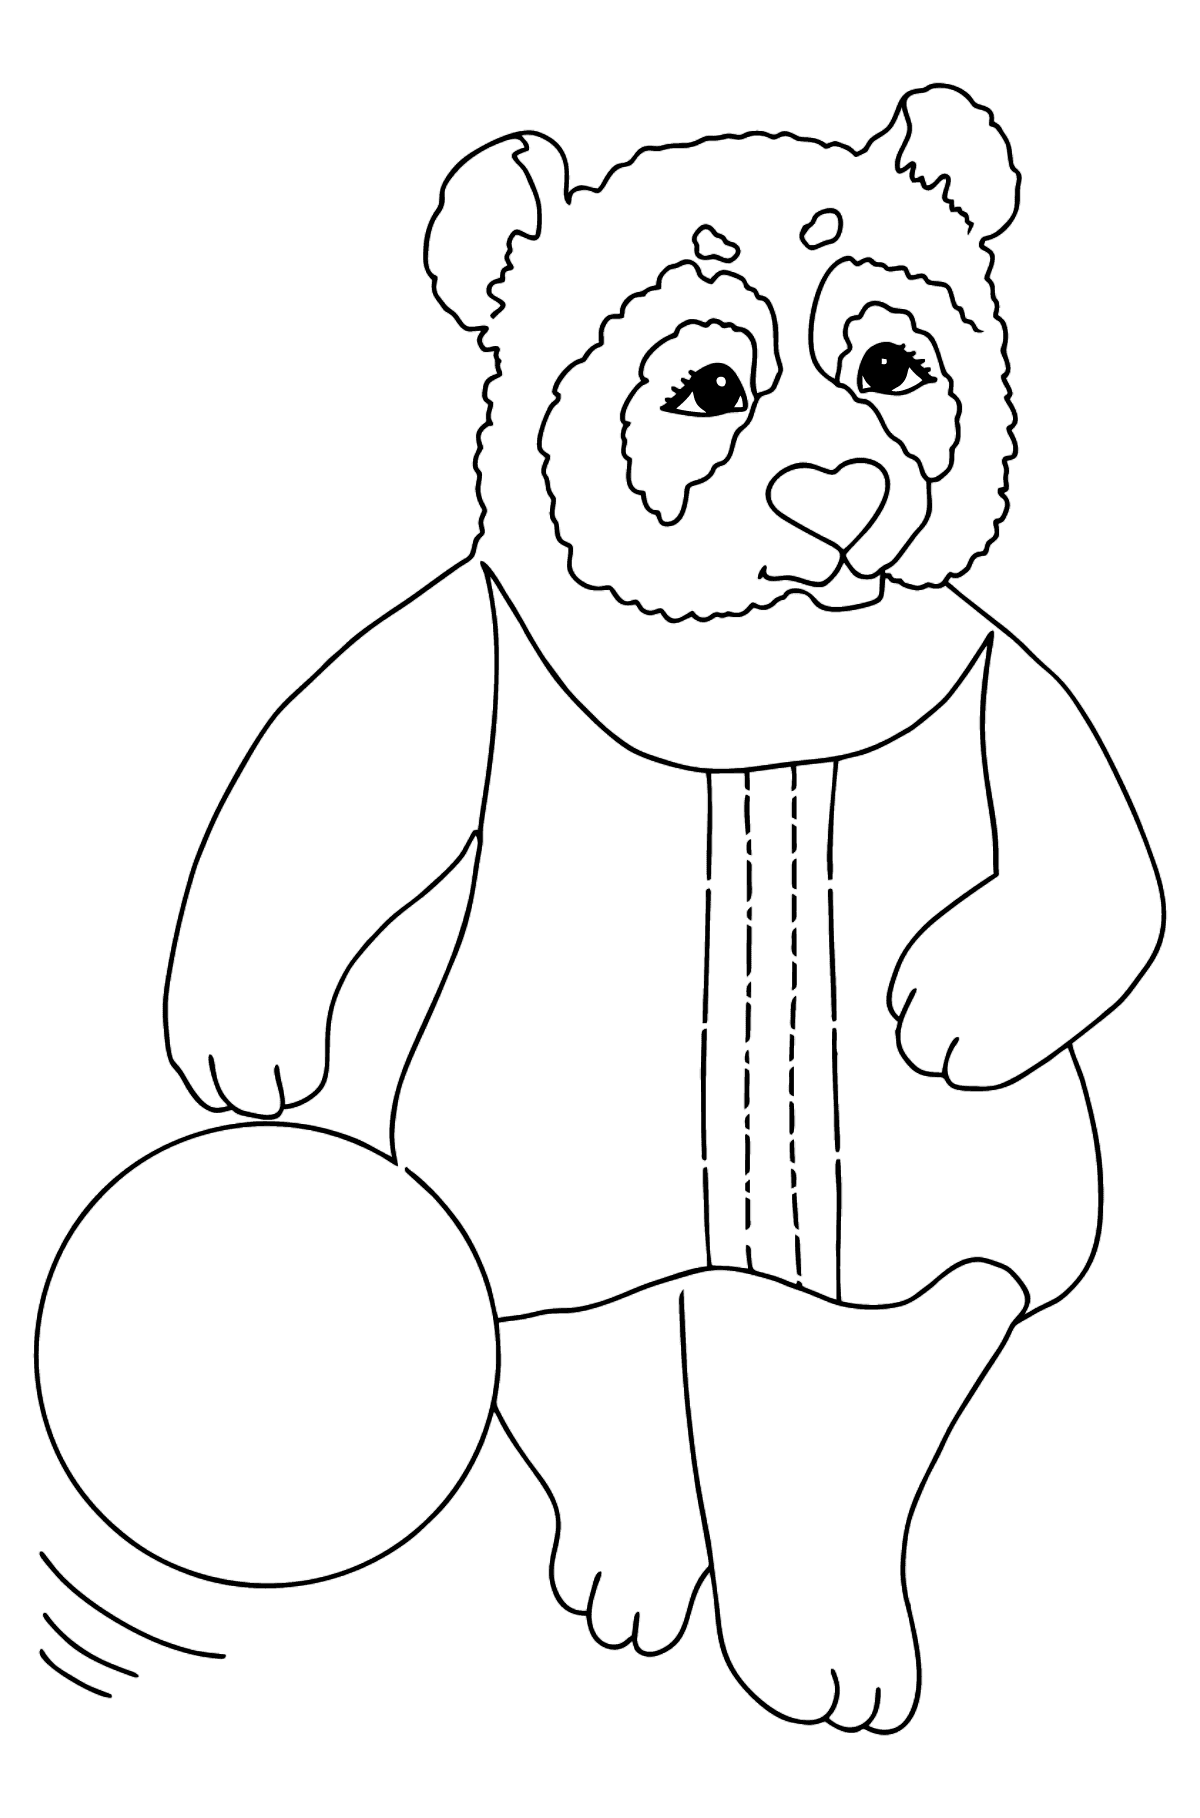 Värityskuva panda vauvoille (helppo) - Värityskuvat lapsille